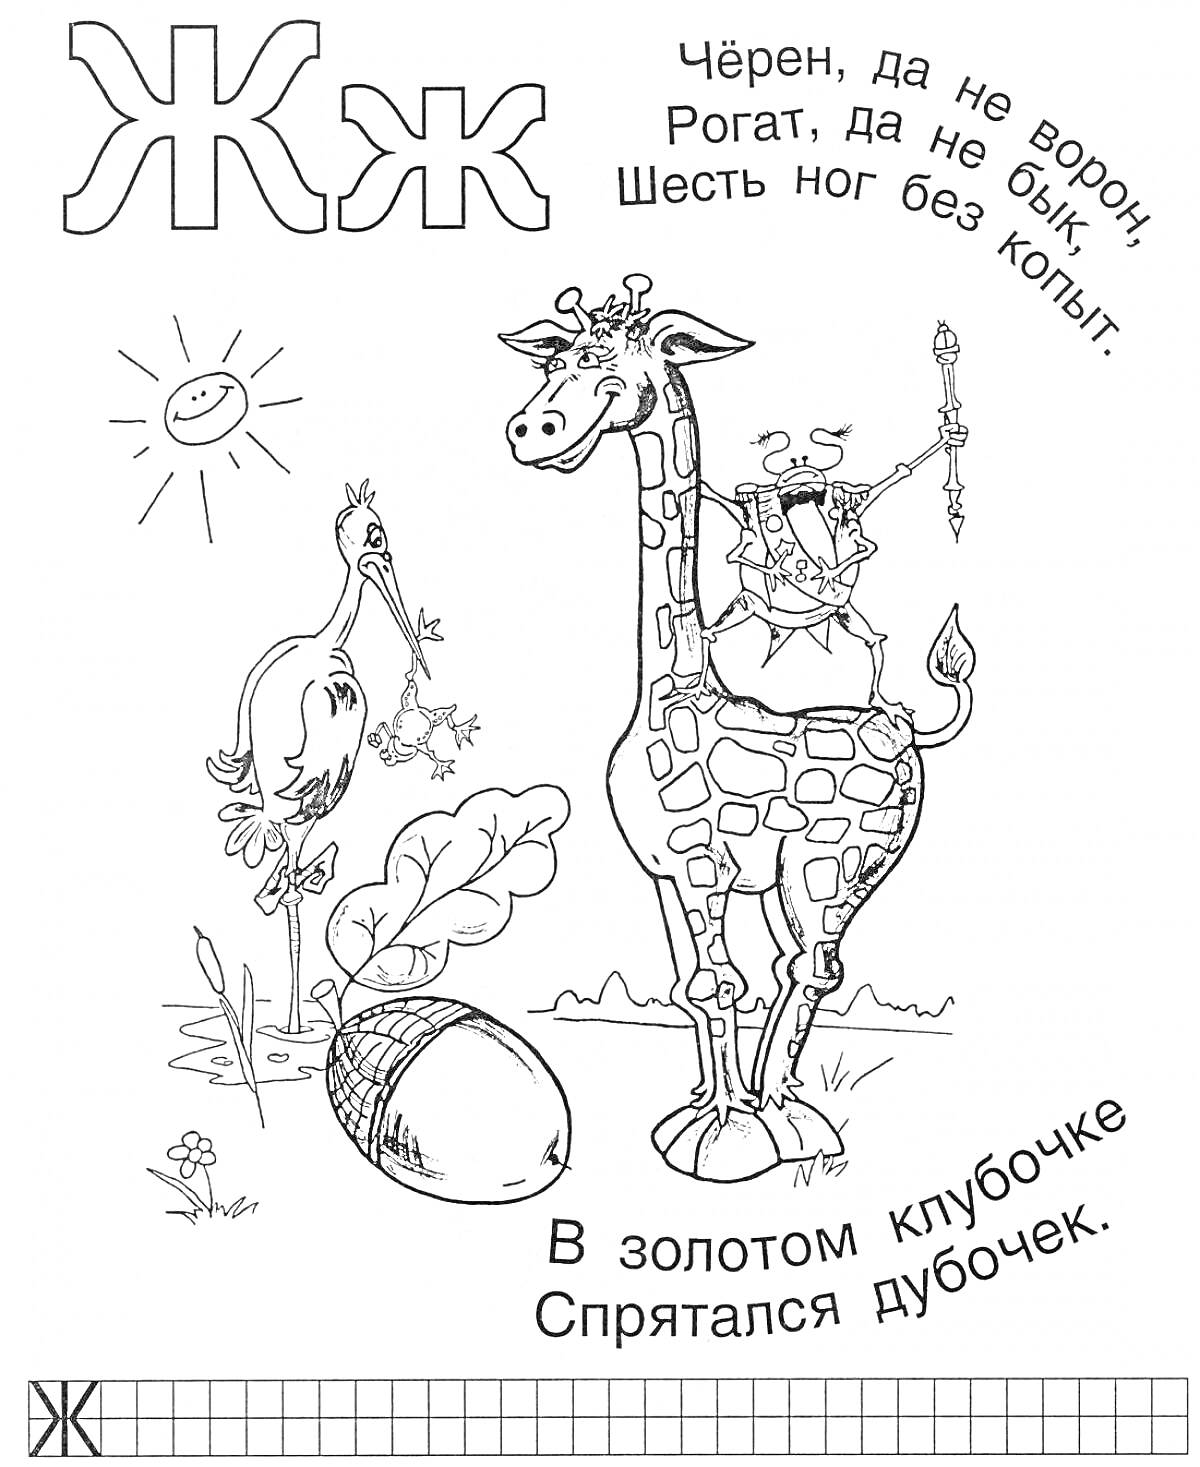 Раскраска Жук на спине жирафа, аист с прутиком во рту, яйцо (вероятно, жёлудь) в траве, стихи о жуке